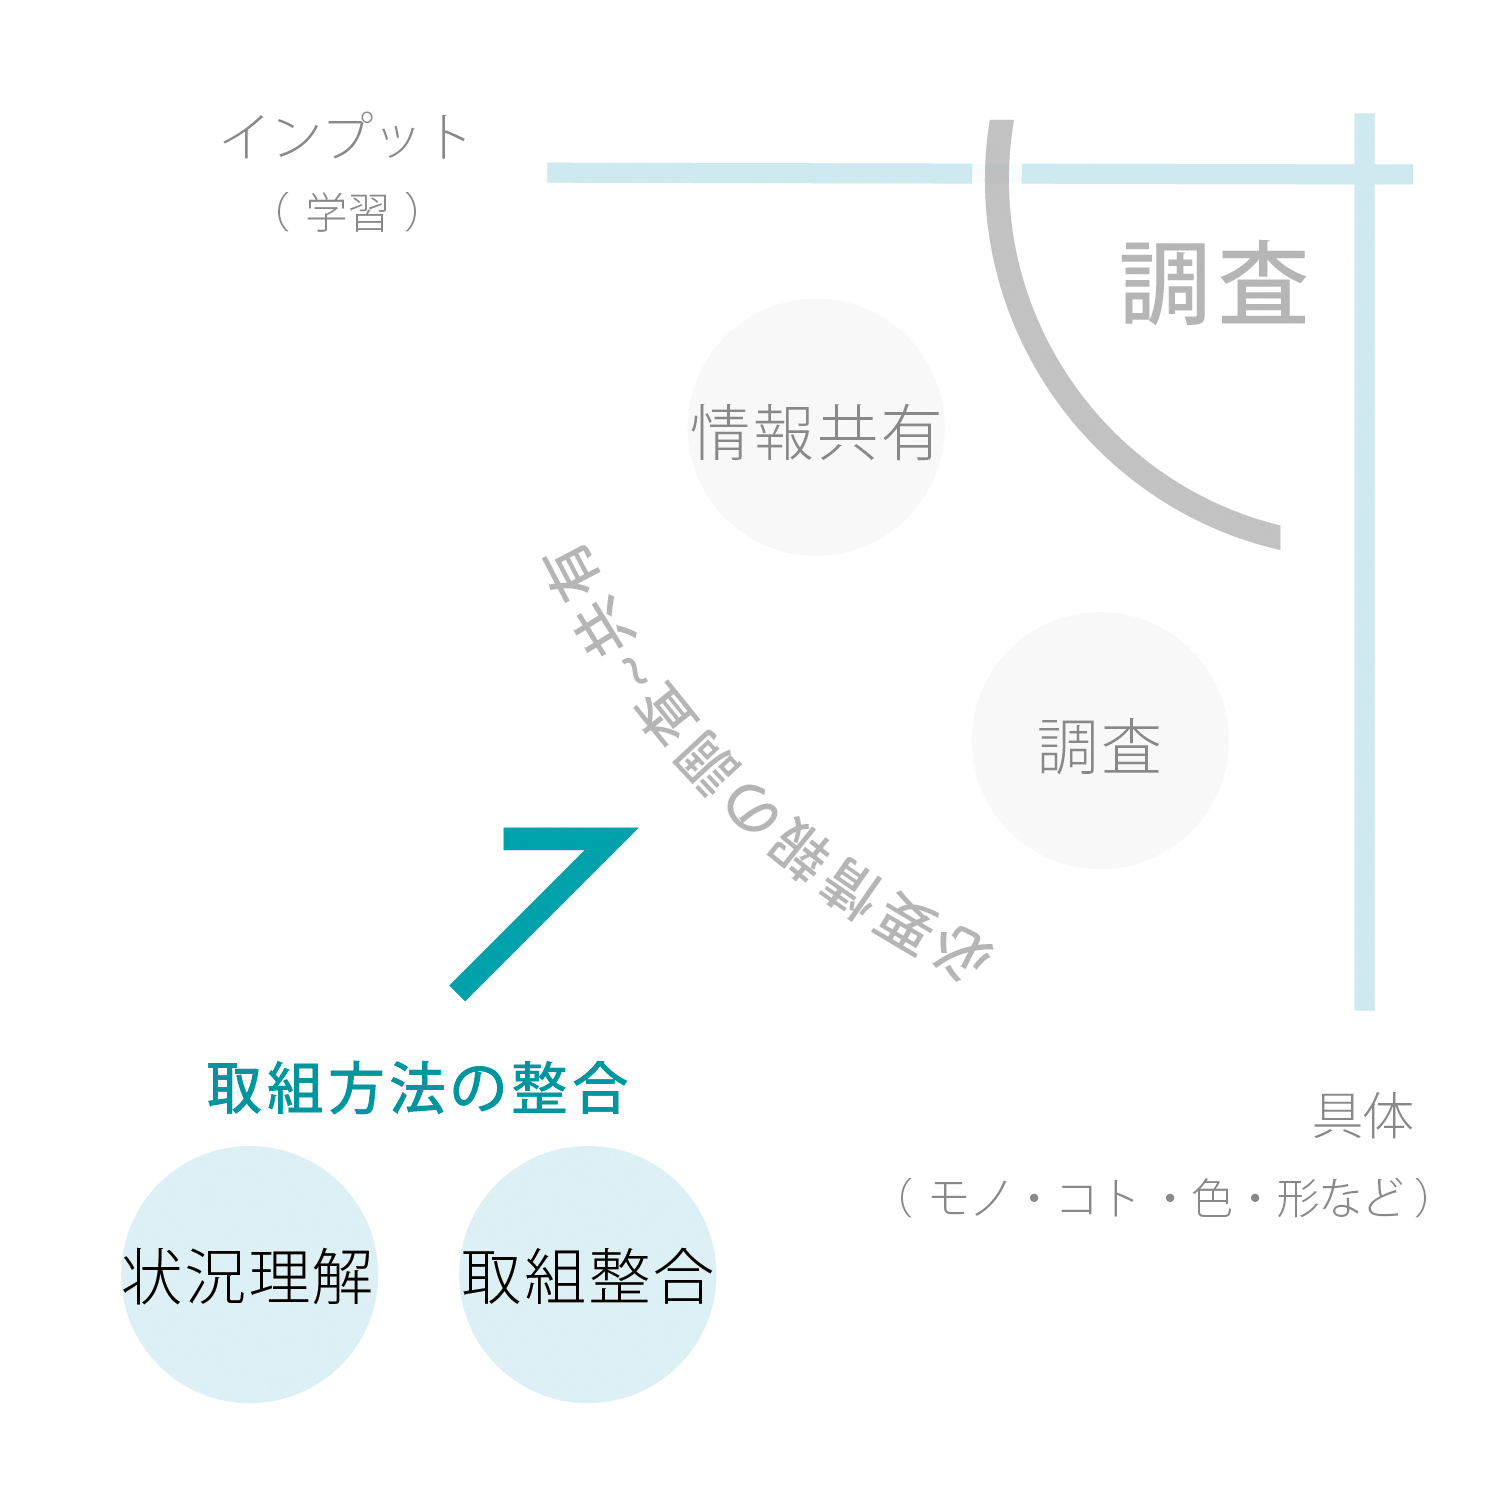 大阪・高知のプロダクトデザイン会社Yについての説明画像